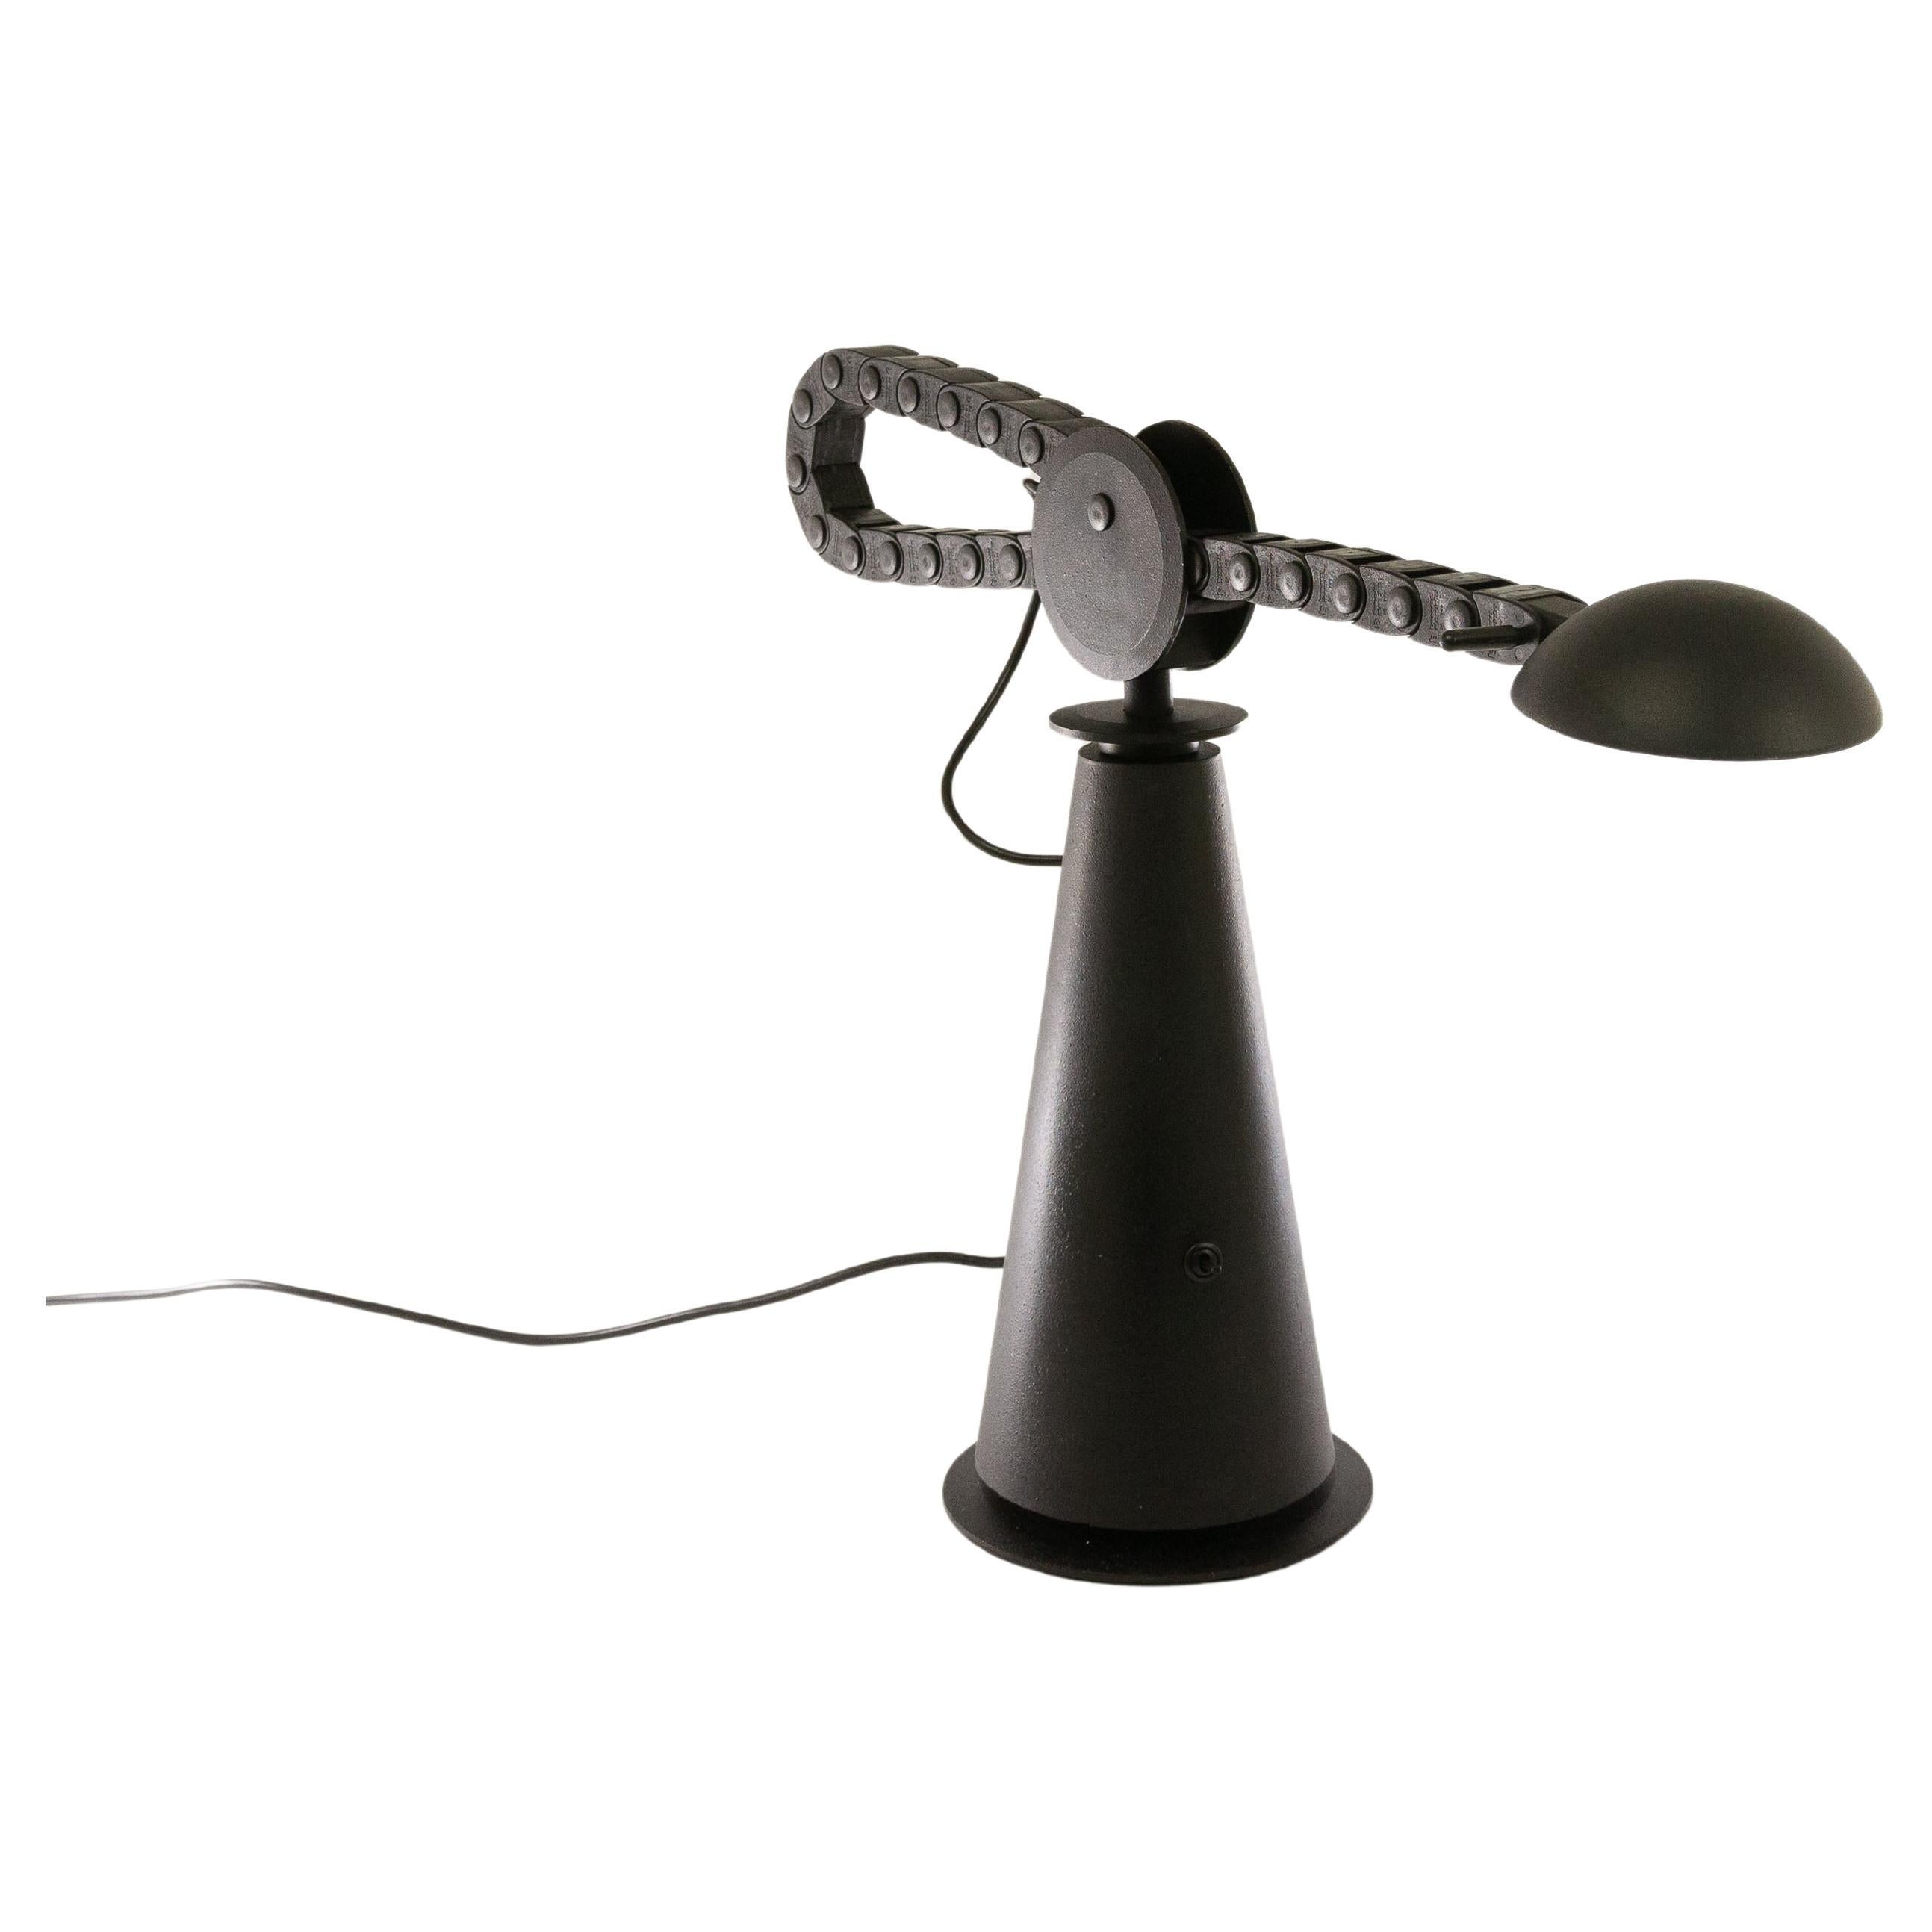 GauchoTable-Lampe, entworfen von Studio PER für Egoluce, 1980er Jahre